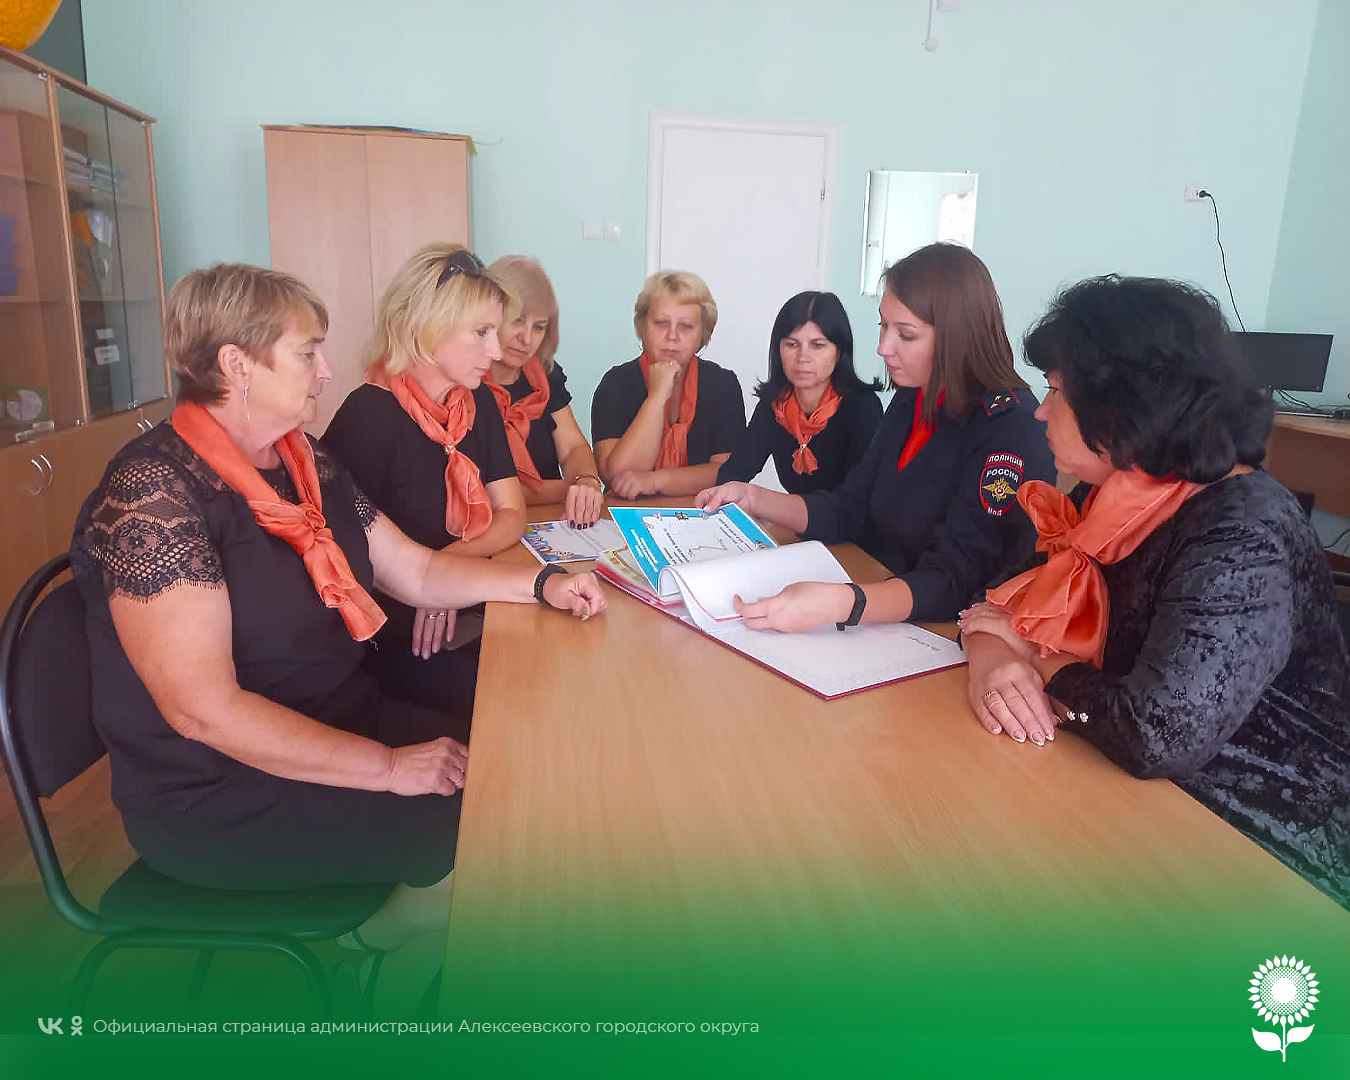 Сотрудник Госавтоинспекции ОМВД России по Алексеевскому городскому округу провела профилактическую беседу с педагогами.